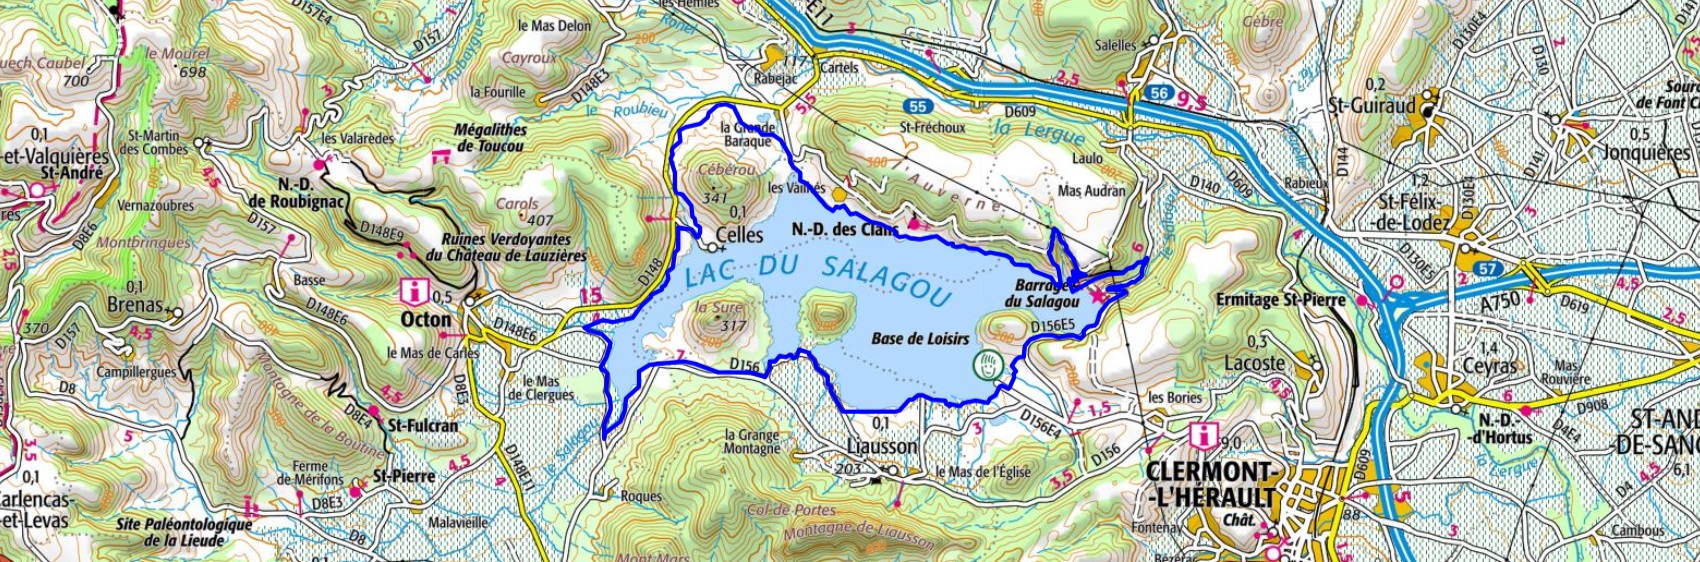 Randonnée autour du Salagou (Hérault) 1